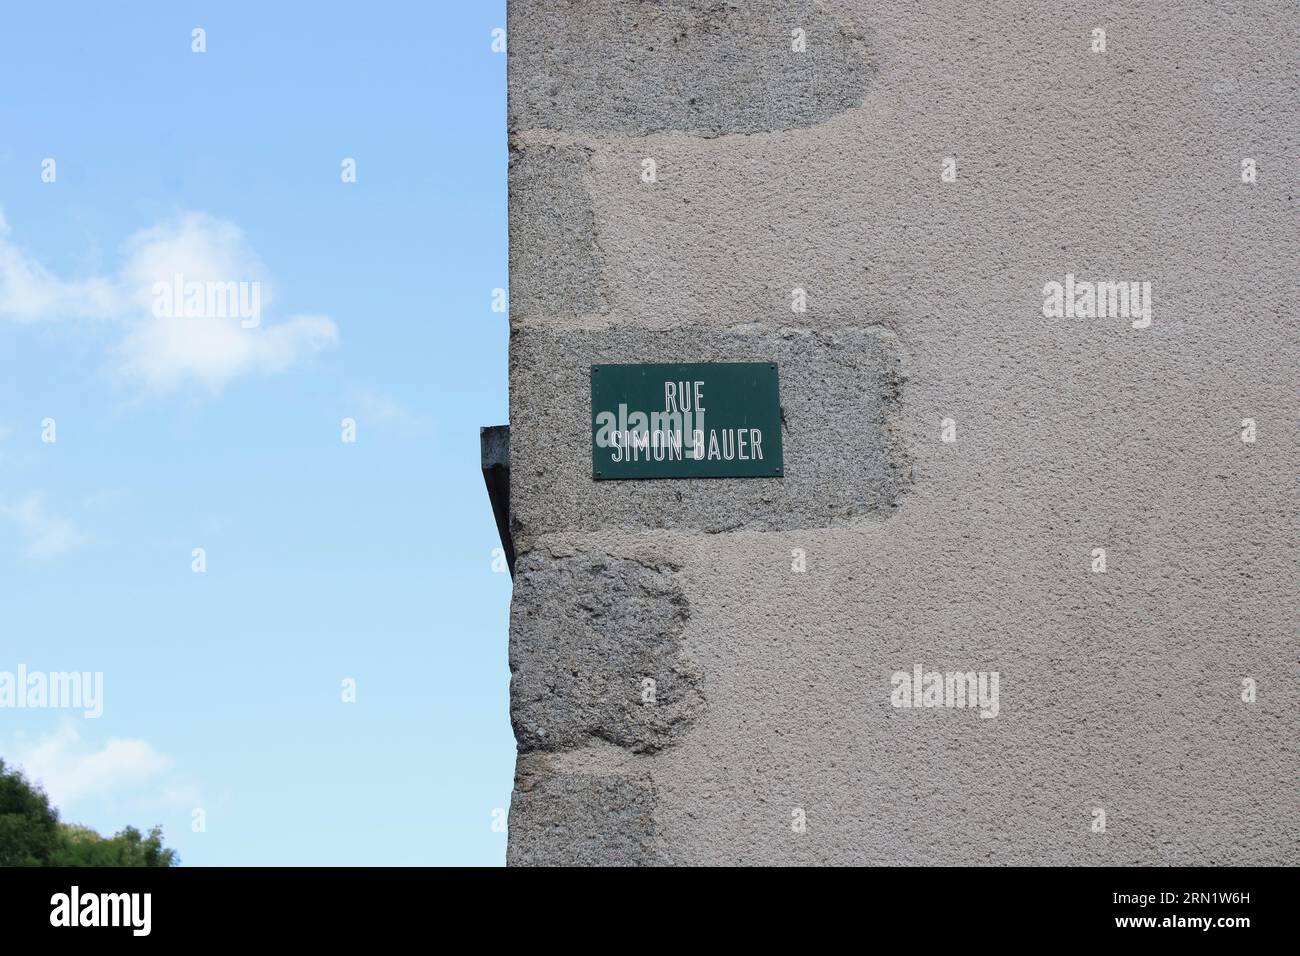 Vue de la signalisation représentant la rue Simon Bauer une rue située au milieu du village français de Moutier d'Ahun célèbre pour son pont romain. Banque D'Images